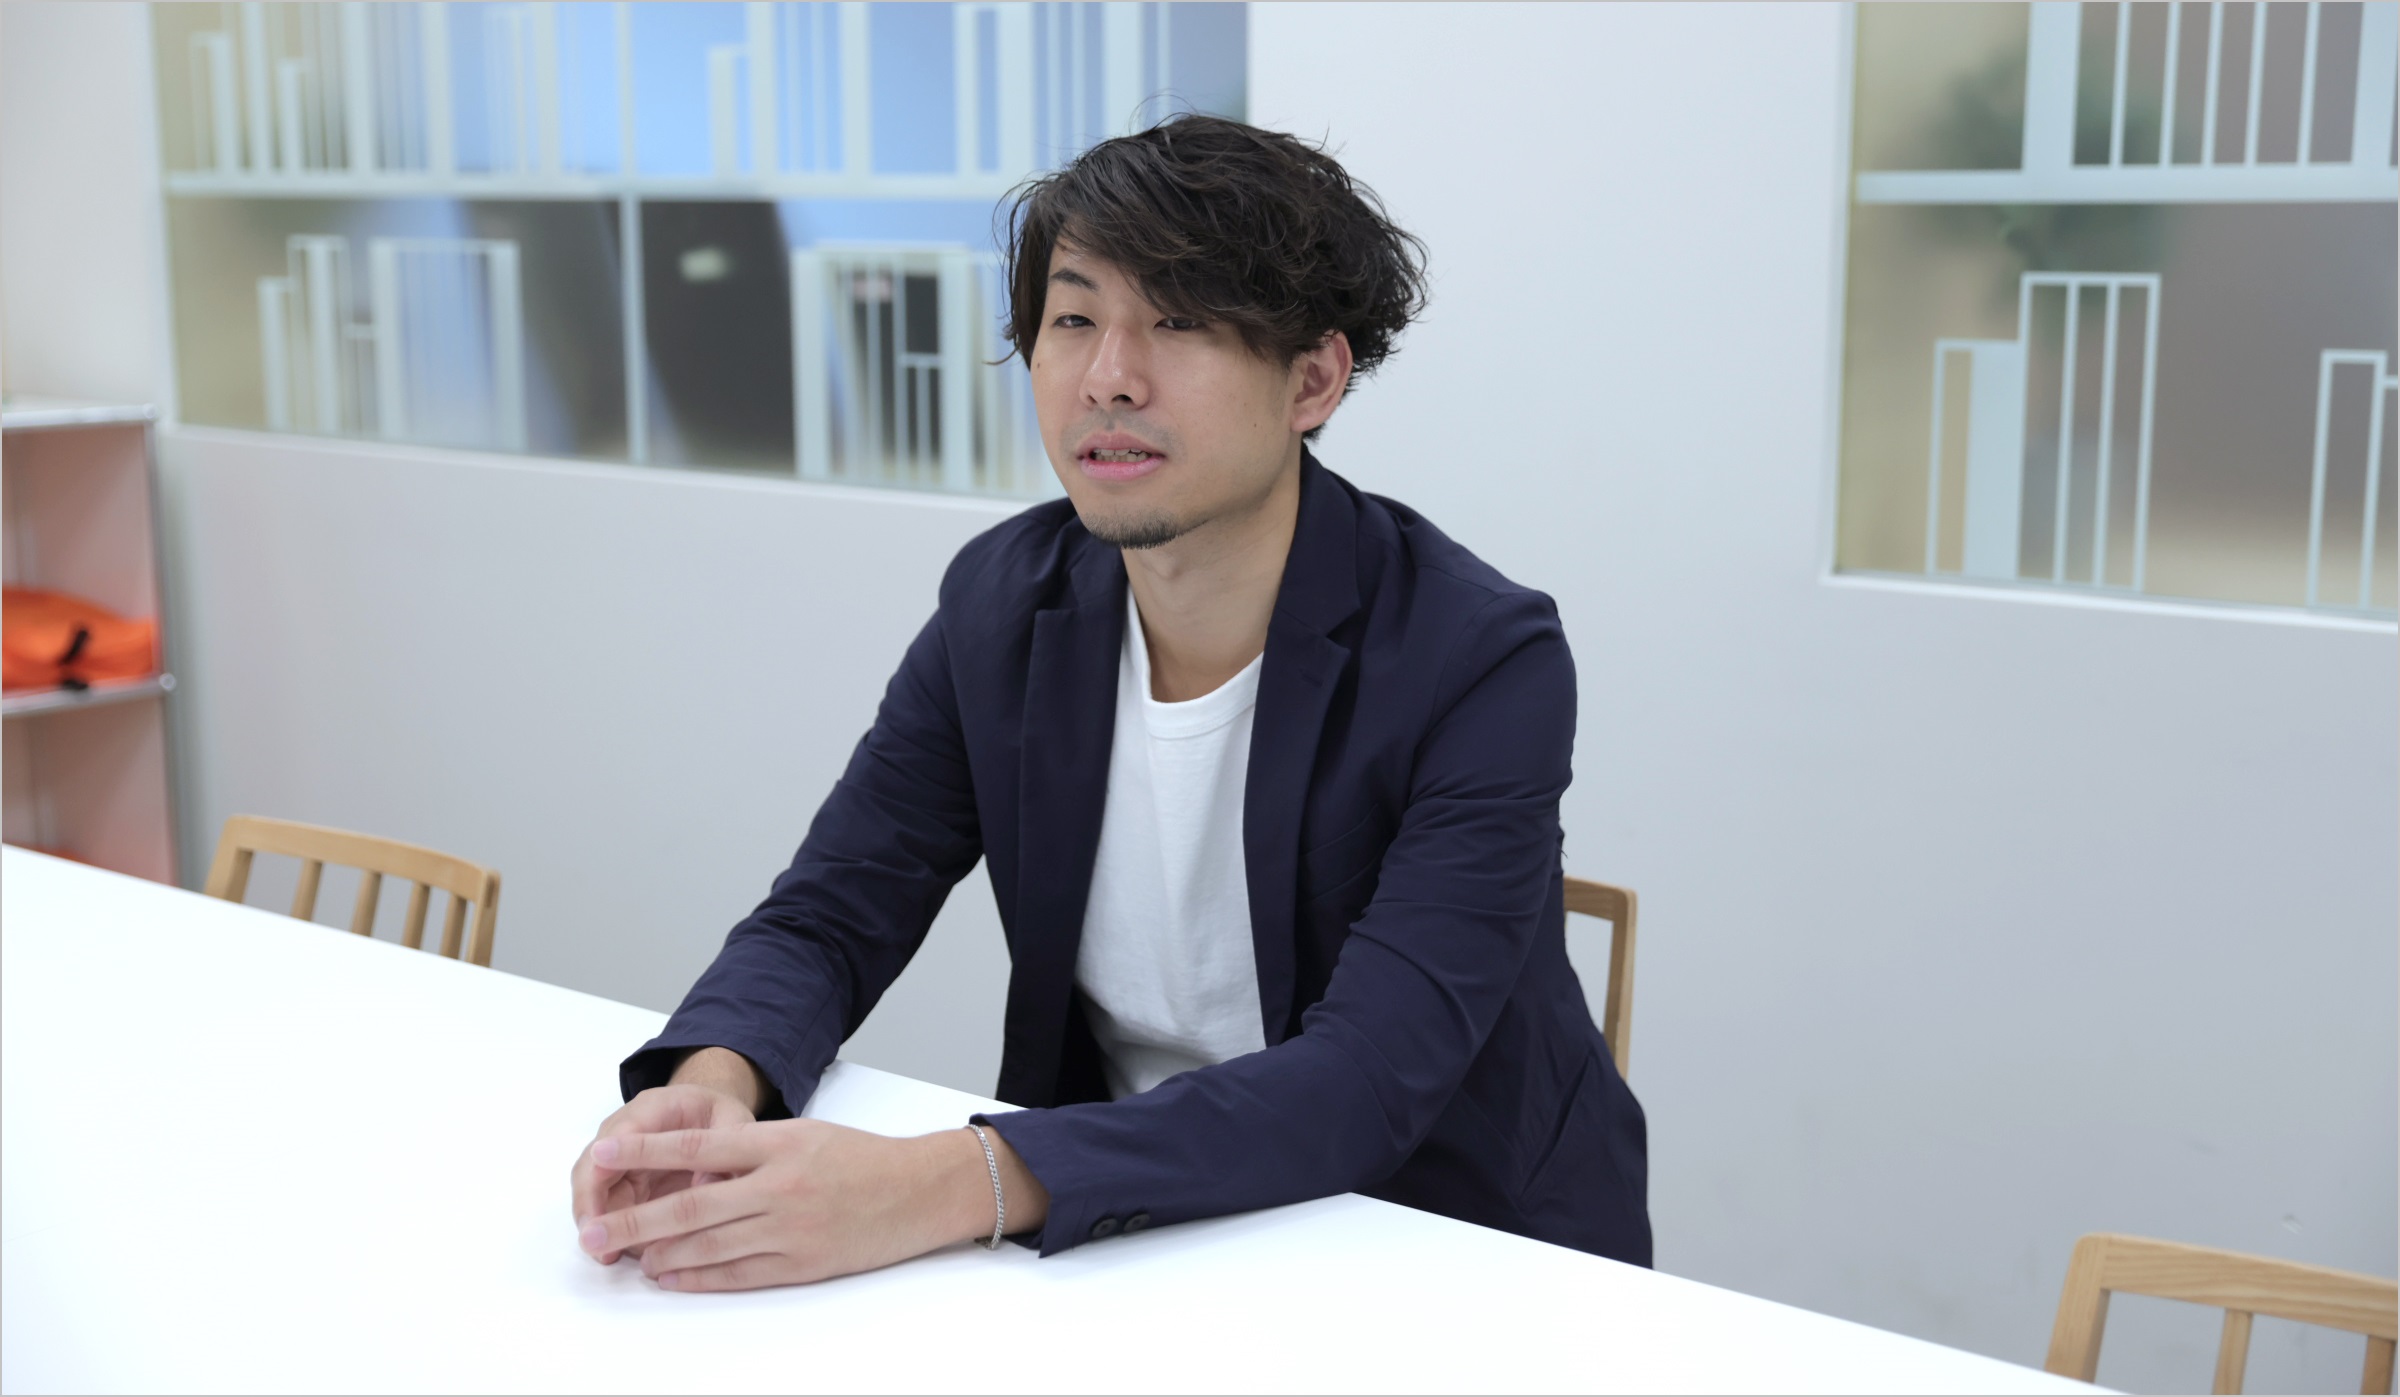 菅原が椅子に座りながら、仕事のやりがいなどについてインタビューに答えている様子の写真